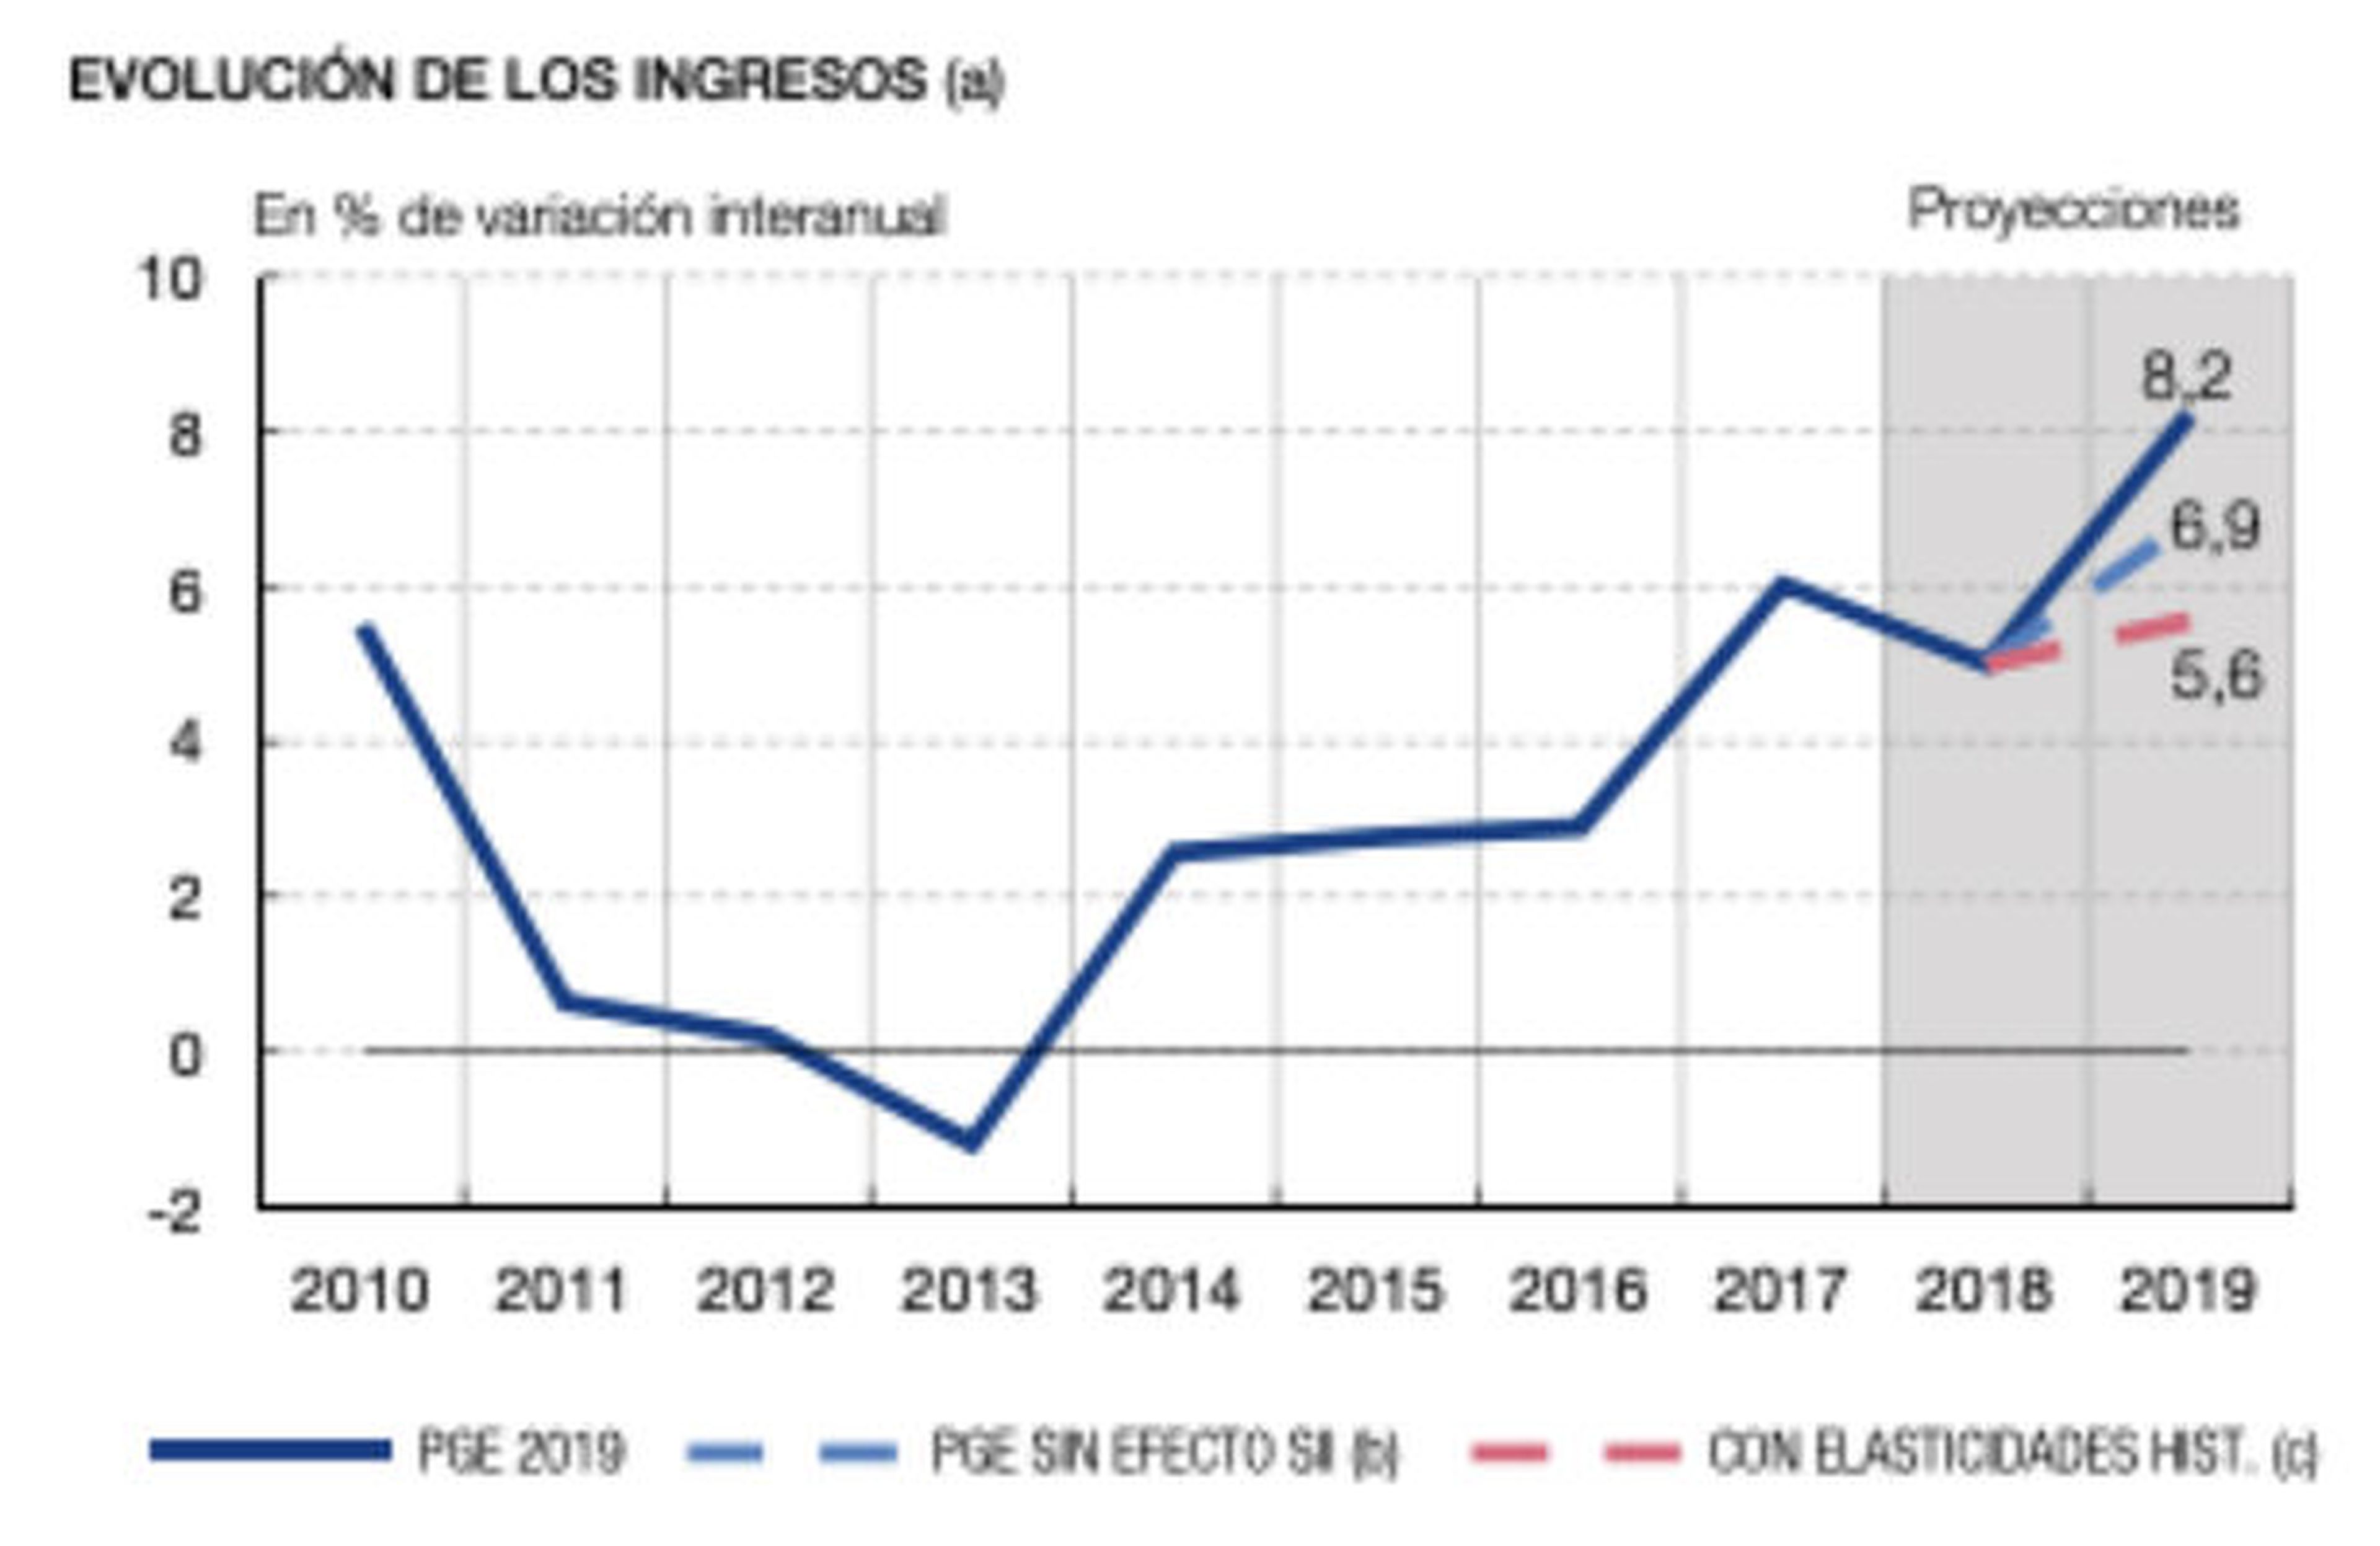 Evolución de los ingresos de los Presupuestos y la previsión del Banco de España.